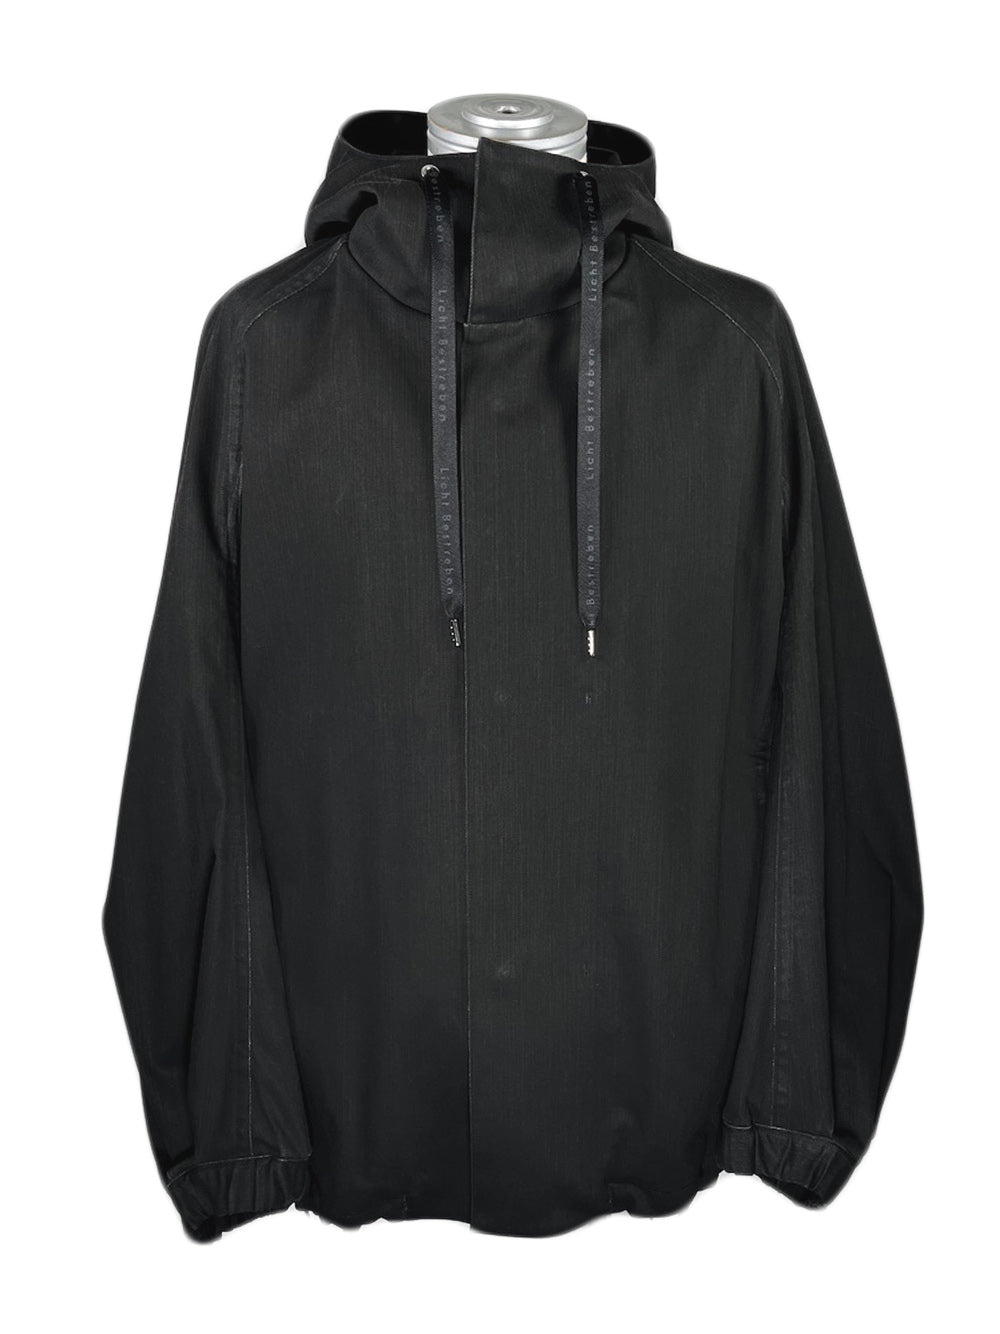 LB23SS-BL03-PDN | 颜料染色连帽夹克 | 黑色颜料染色